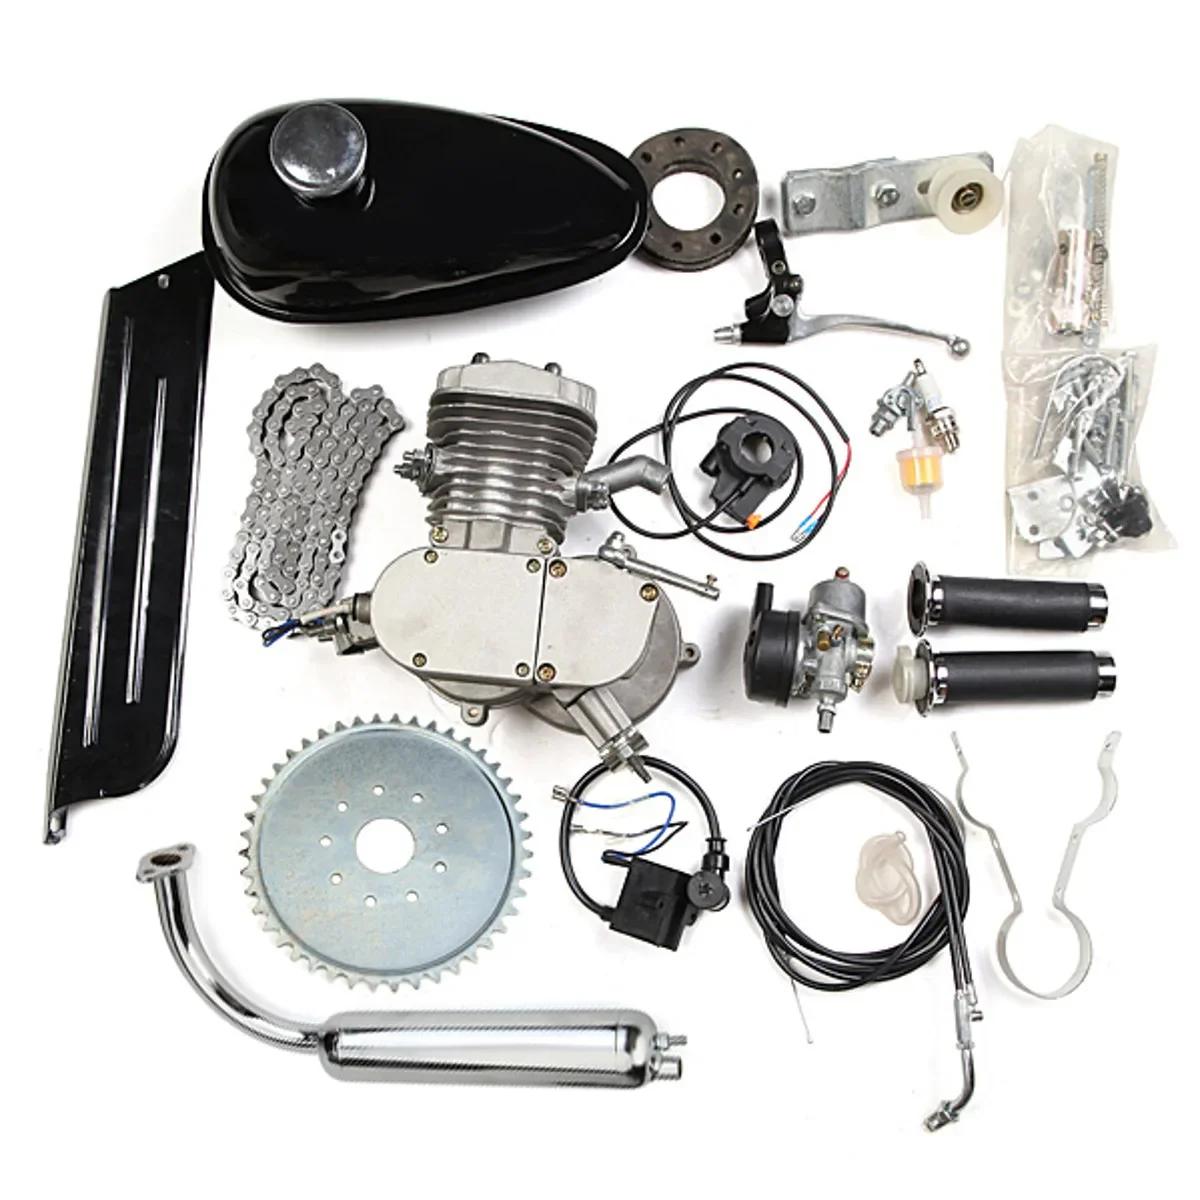 DIY 전기 자전거용 가스 엔진 키트, 2 스트로크 모터 바이크 엔진, 더트 포켓 바이크, 완전한 엔진 키트, 60cc, 80cc